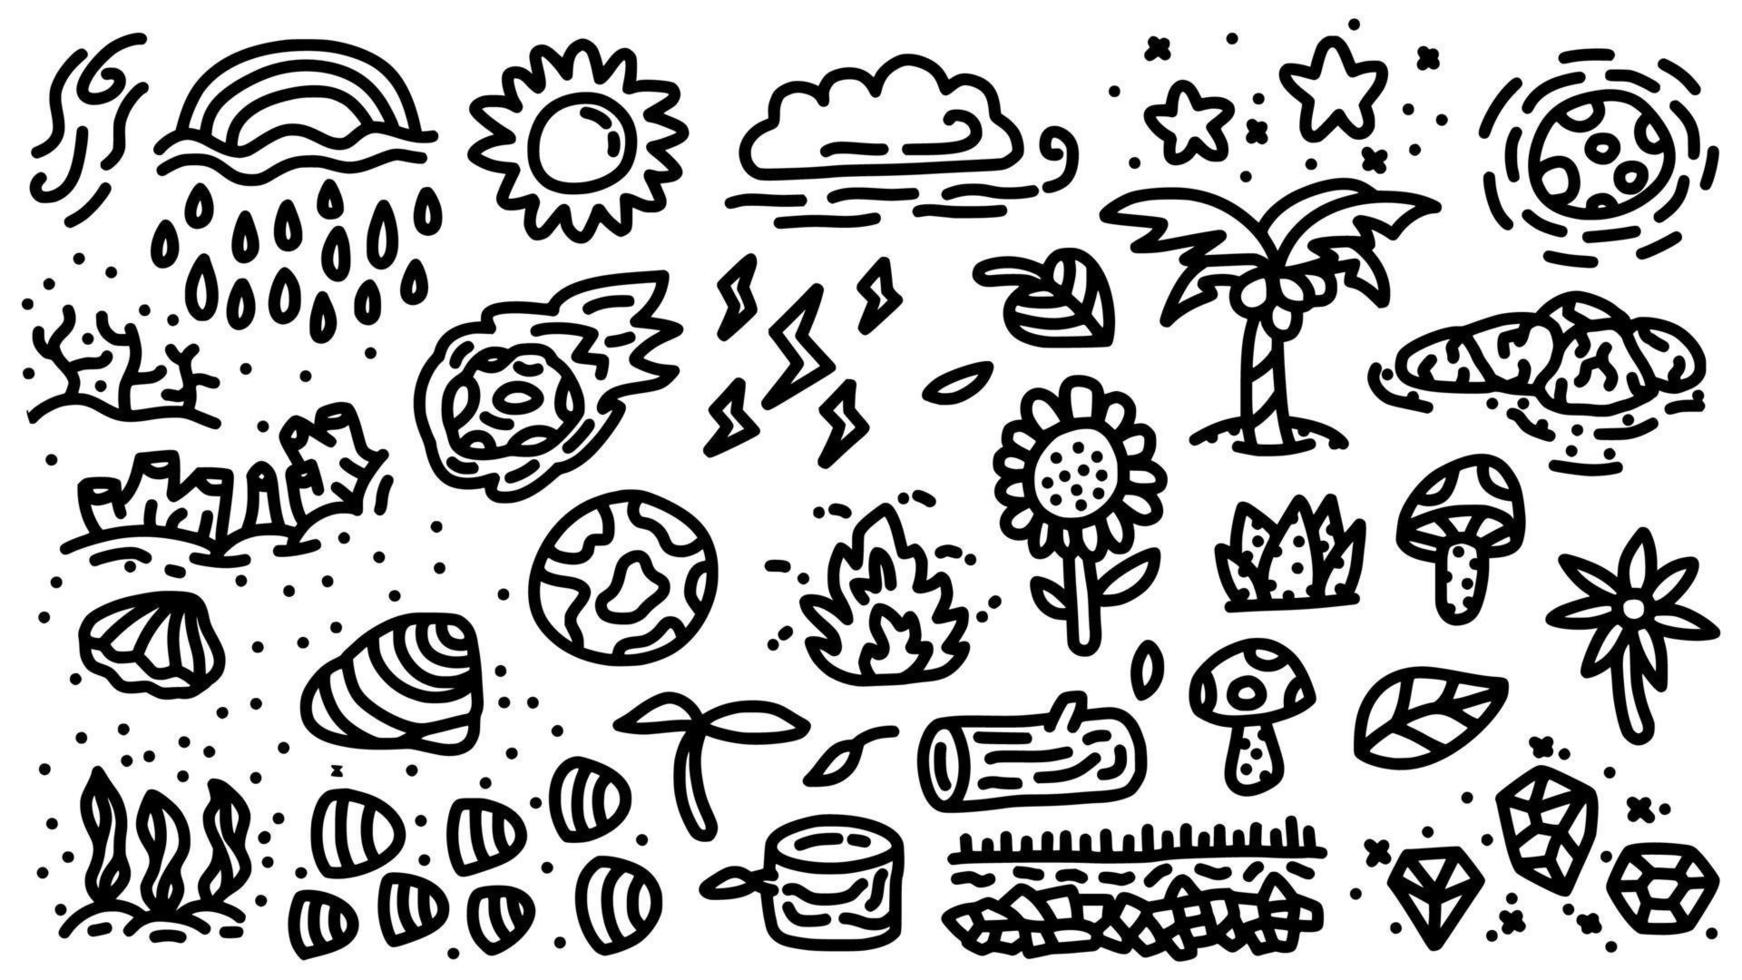 aarde en natuur icon set hand getrokken doodle schets vector sjabloon illustratie collectie voor onderwijs en kleurboek